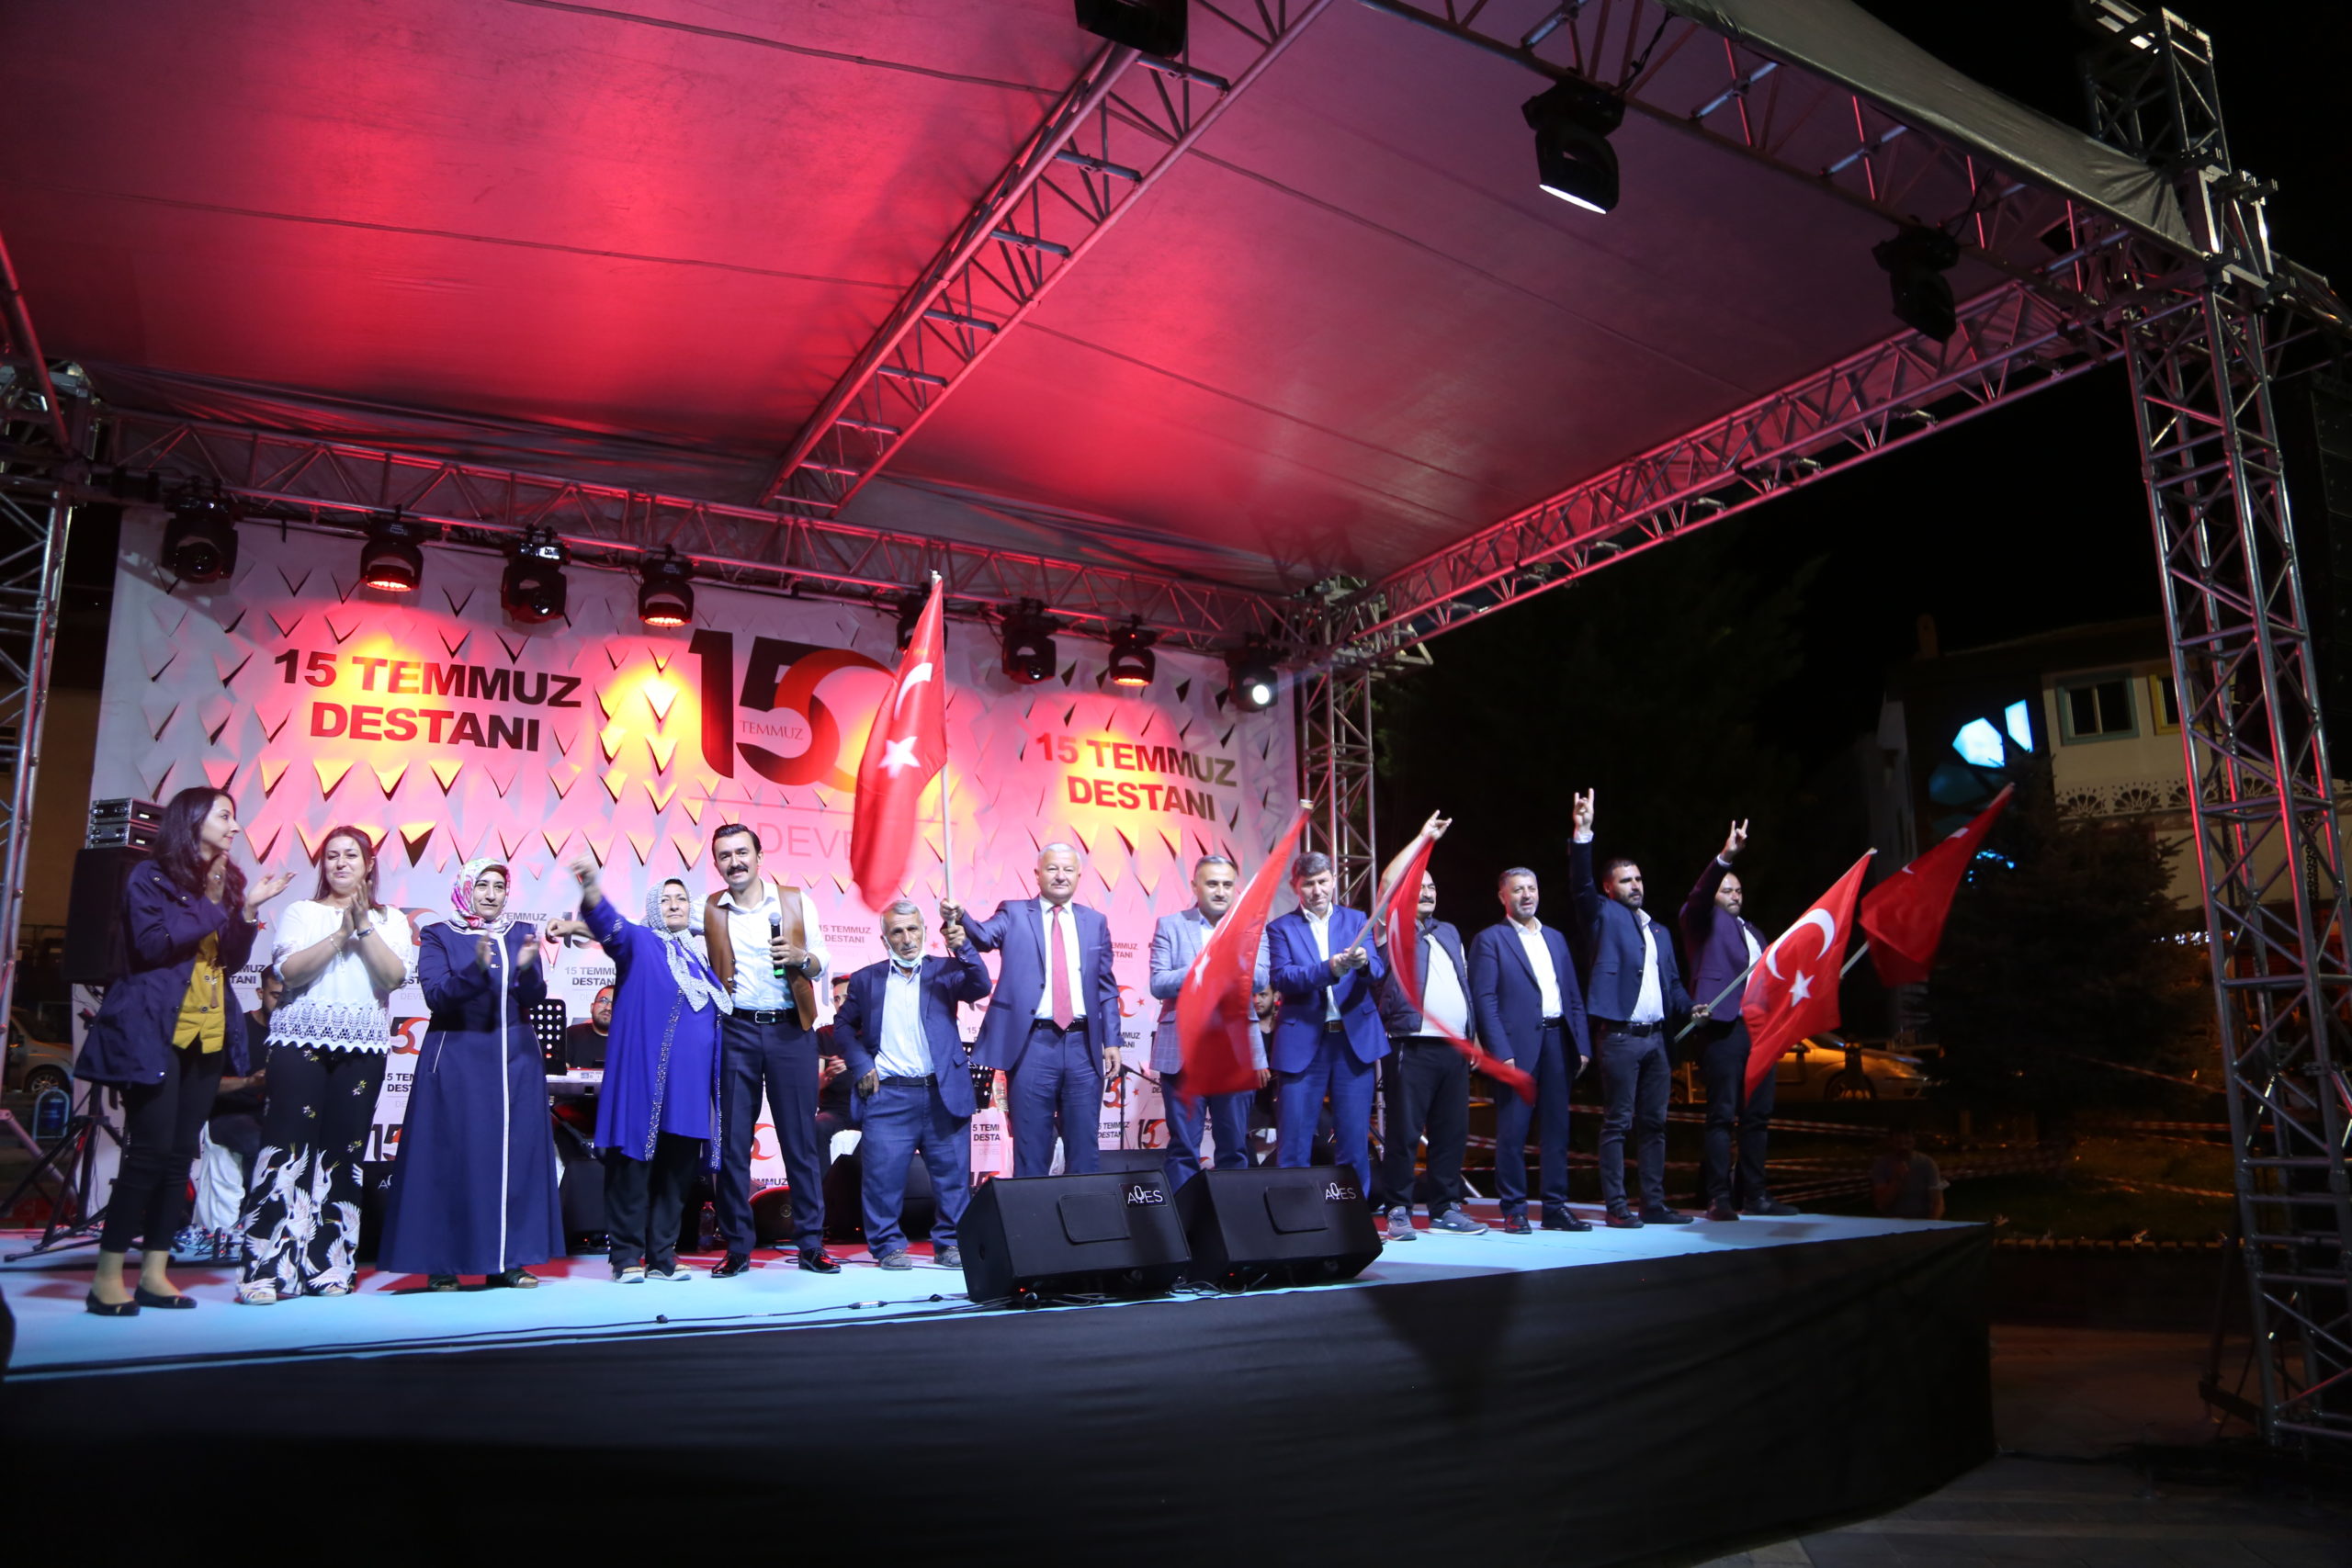  15 Temmuz’un 5. Yıldönümünde Develi “Türkiye Geçilmez” Dedi